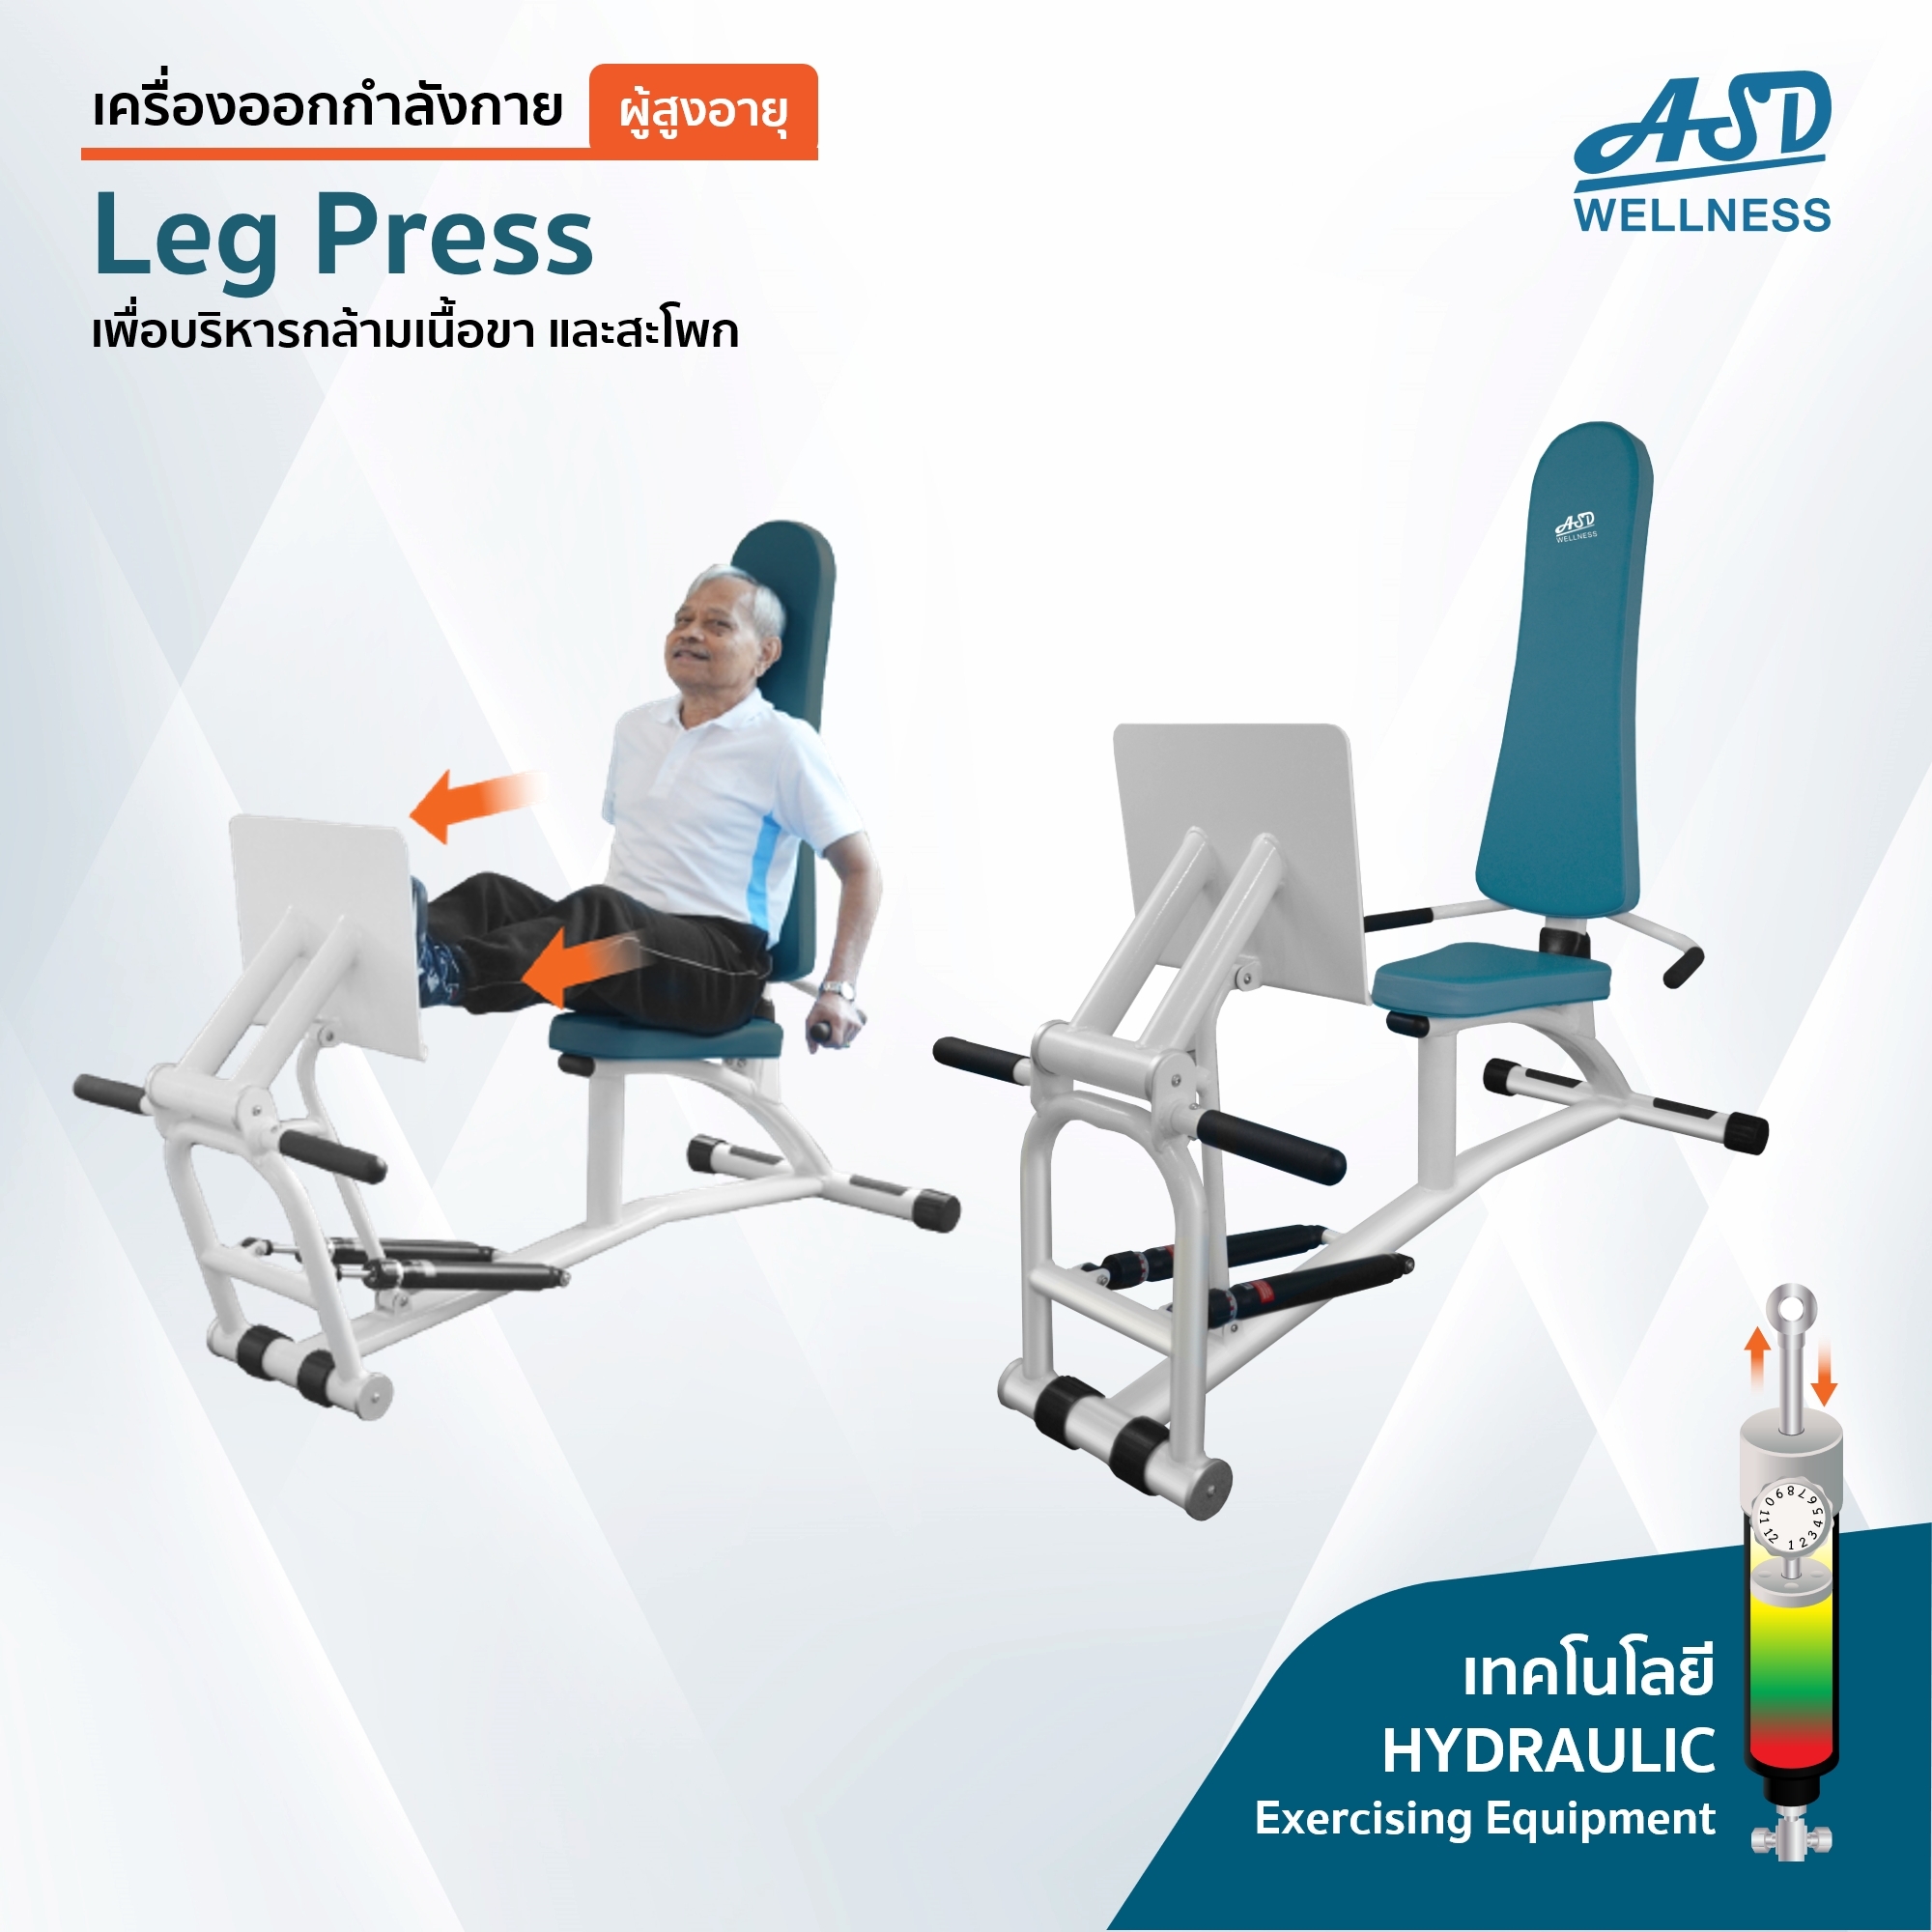 เครื่องออกกำลังกาย สำหรับผู้สูงอายุ เพื่อบริหารกล้ามเนื้อขา และสะโพก Leg Press